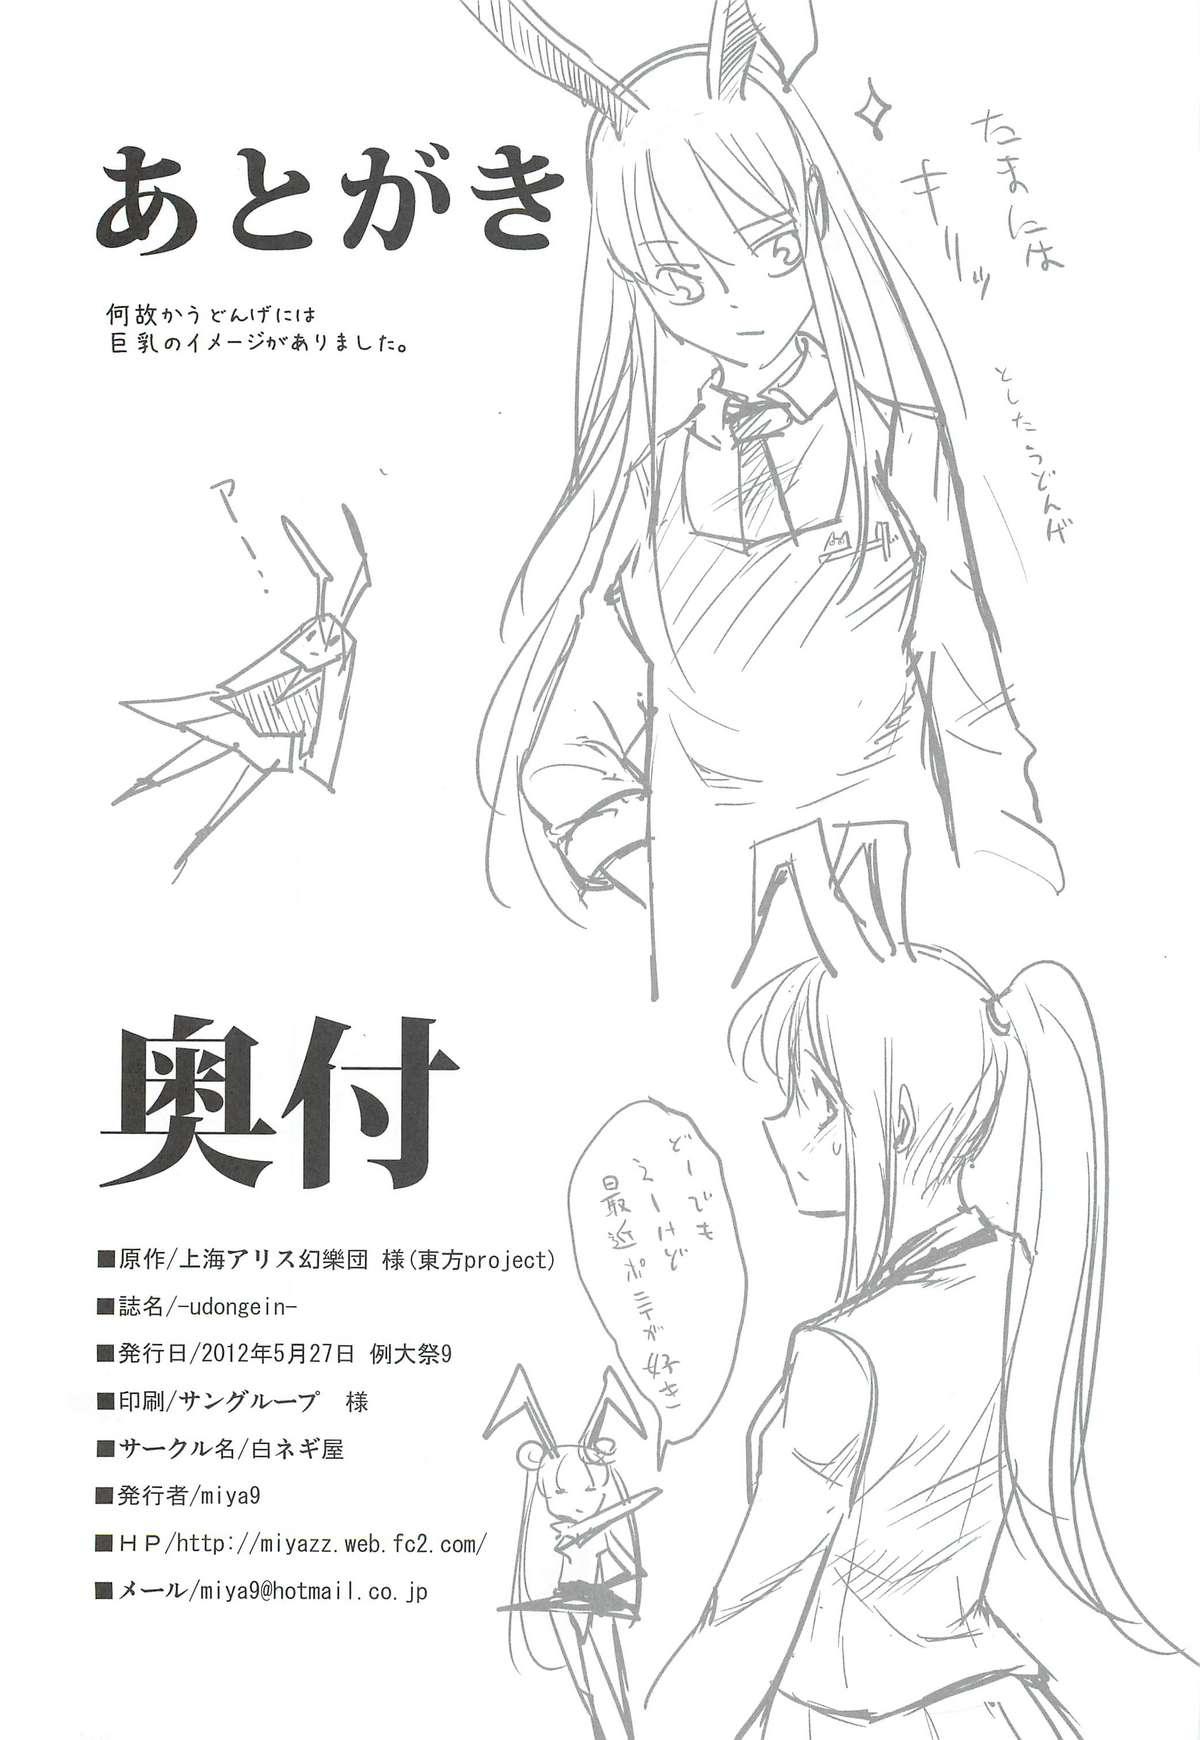 Fucking (Reitaisai 9) [Shironegiya (miya9)] -udongein- (Touhou Project) - Touhou project Ftv Girls - Page 25